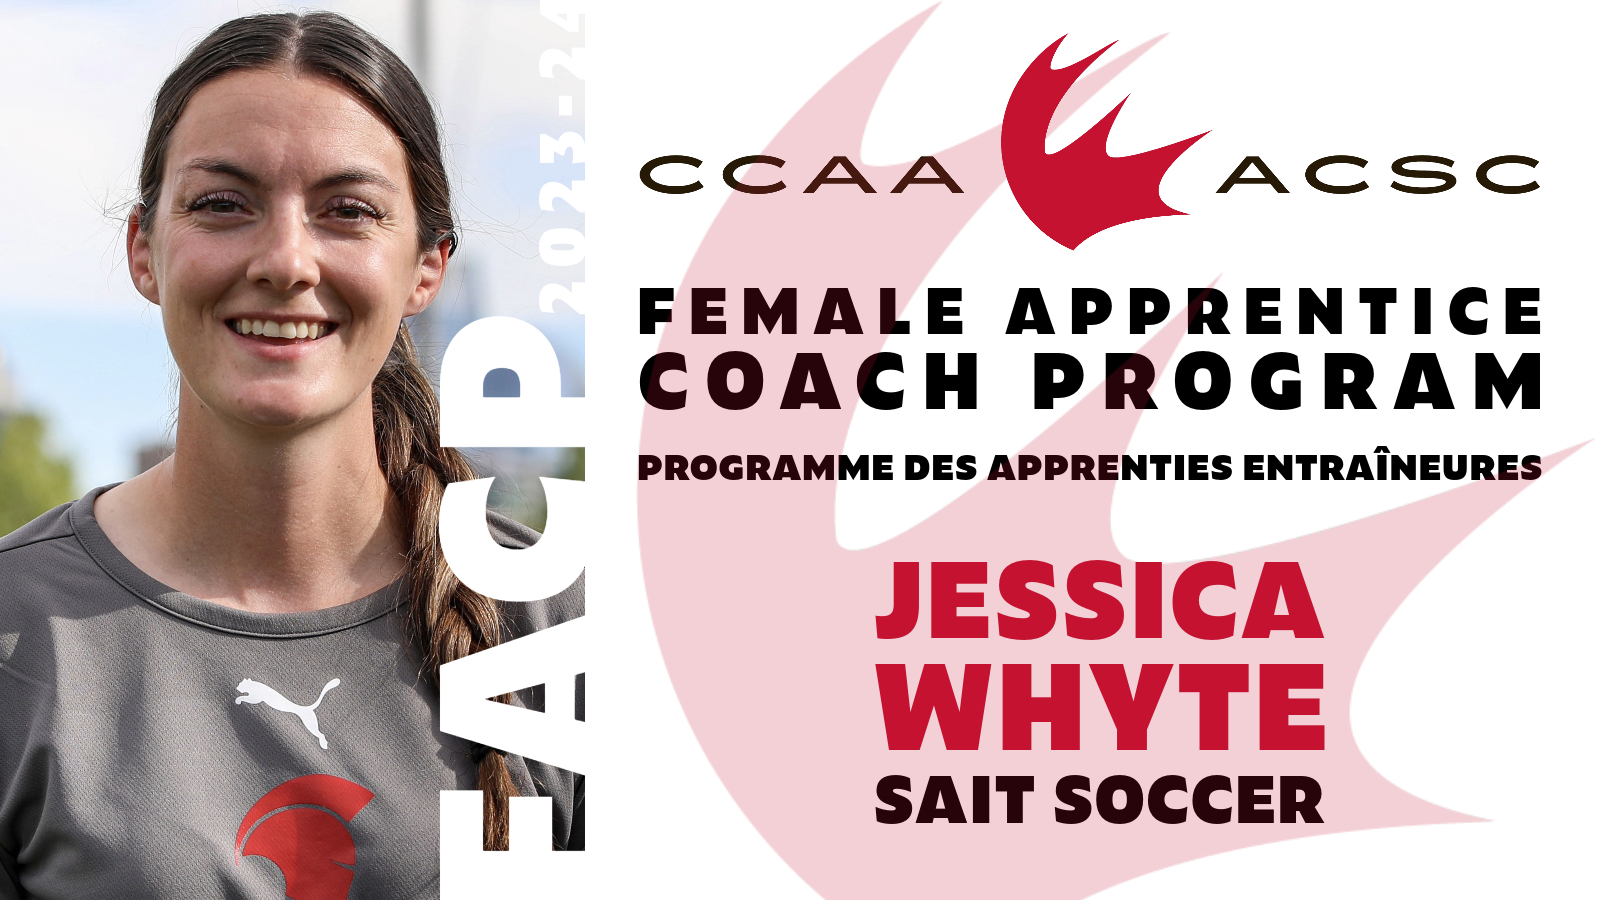 CCAA Soccer apprentice: Jessica Whyte